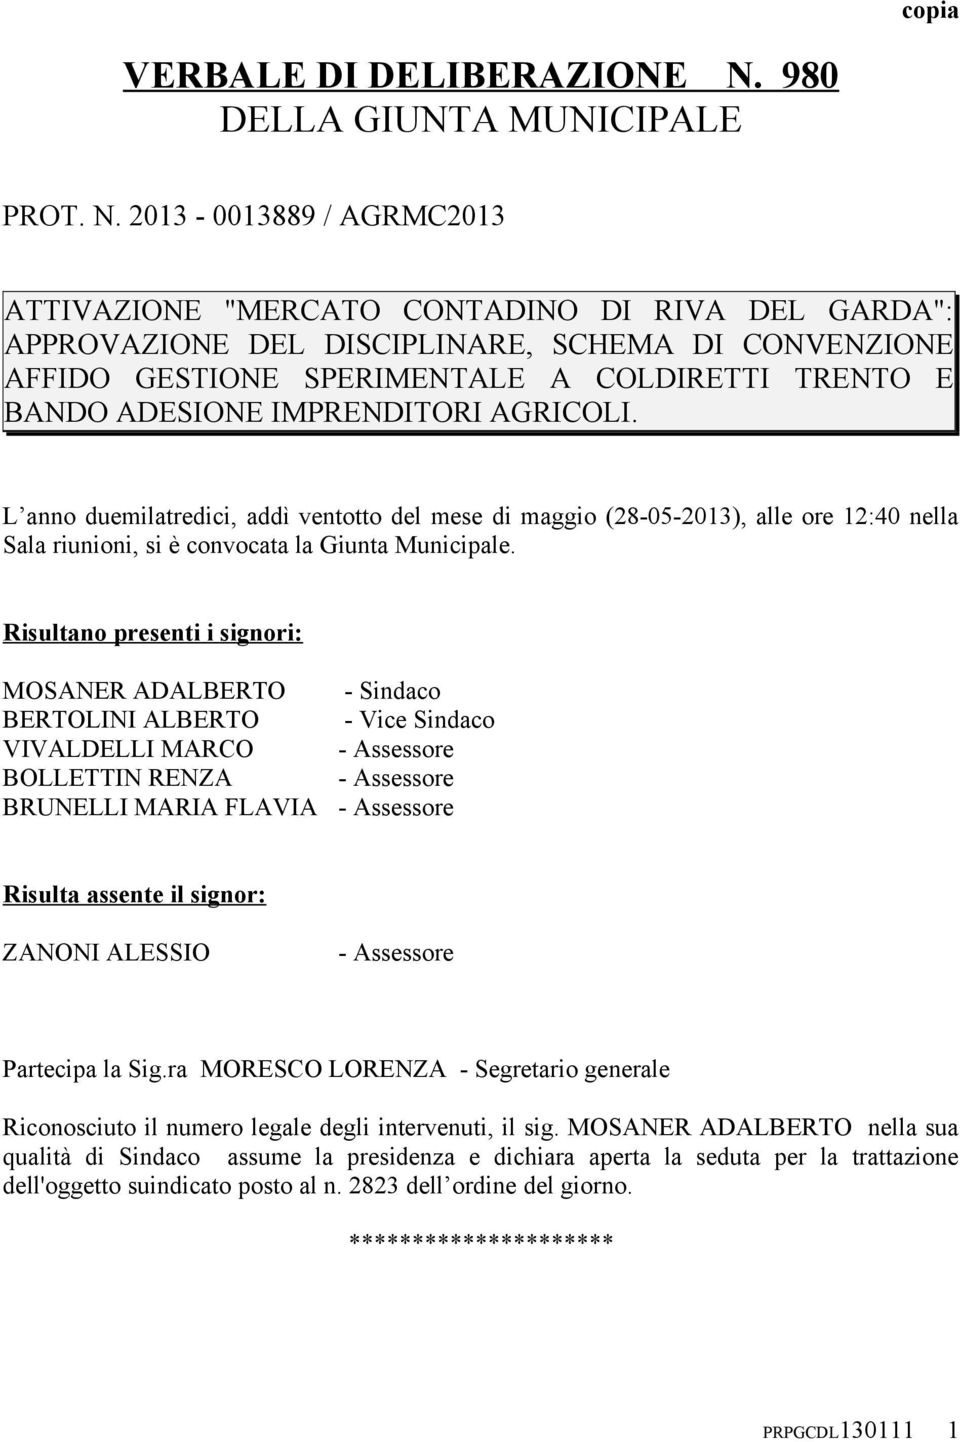 2013-0013889 / AGRMC2013 ATTIVAZIONE "MERCATO CONTADINO DI RIVA DEL GARDA": APPROVAZIONE DEL DISCIPLINARE, SCHEMA DI CONVENZIONE AFFIDO GESTIONE SPERIMENTALE A COLDIRETTI TRENTO E BANDO ADESIONE